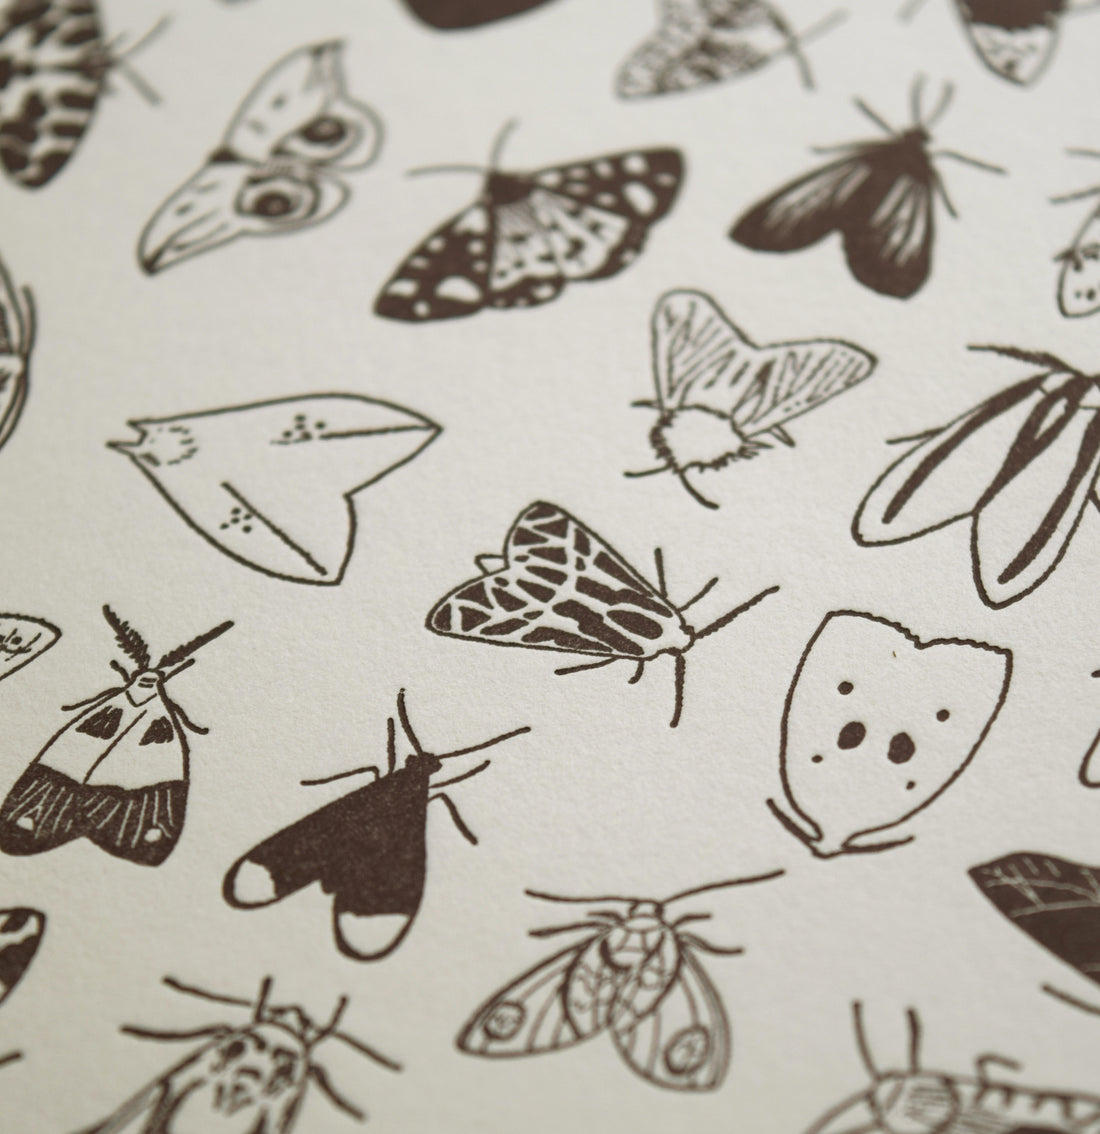 Letterpress art print depicting varieties of moths in black ink printed on Vandercook Universal I letterpress